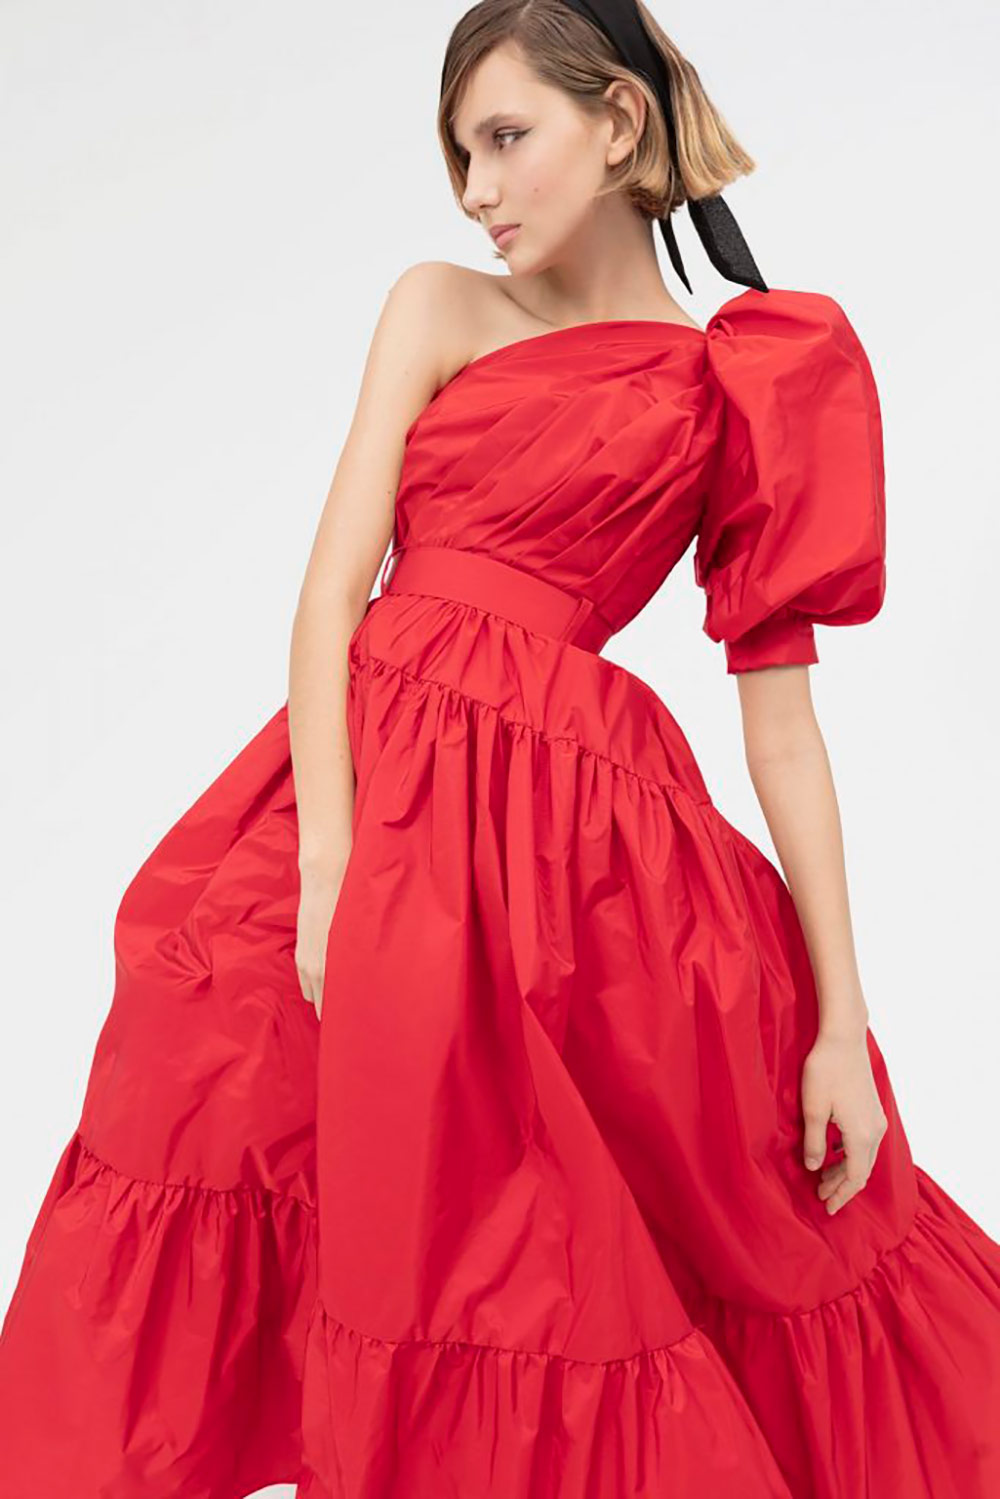 Combinar vestido rojo: cómo hacerlo para convertirte en una inspiración